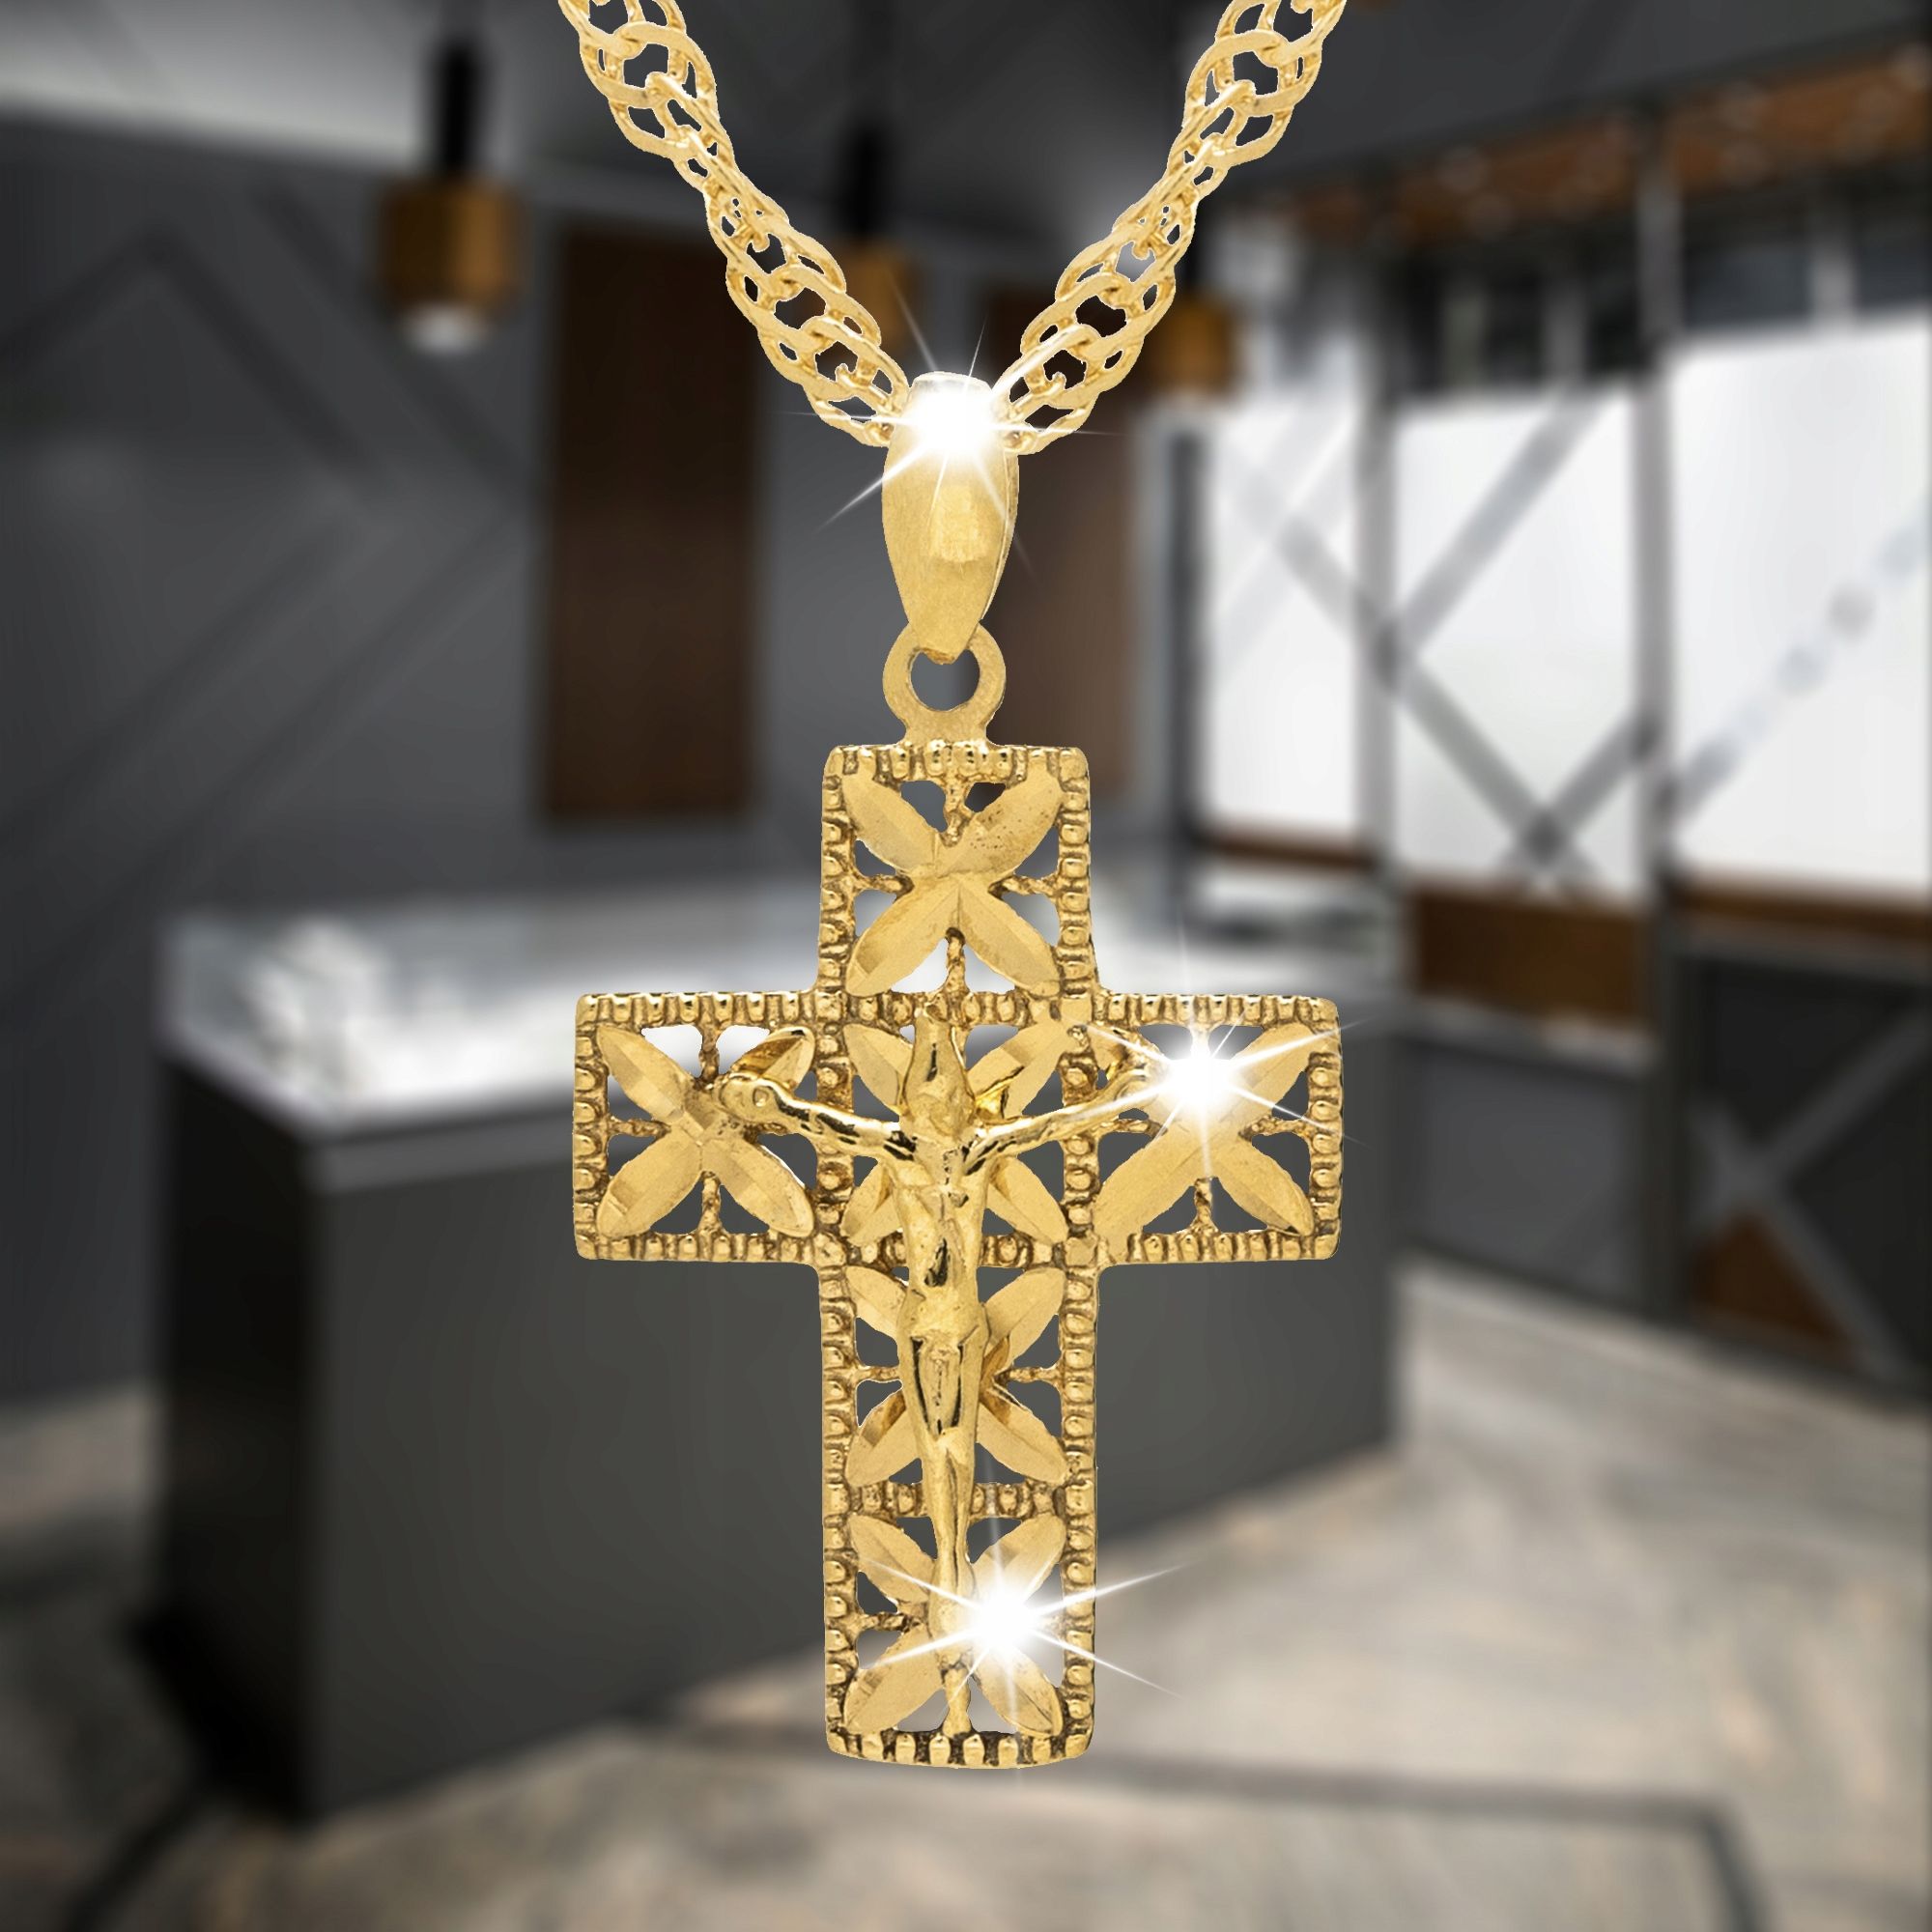 Złoty Łańcuszek+krzyżyk Srebro 925 Komunia Chrzest